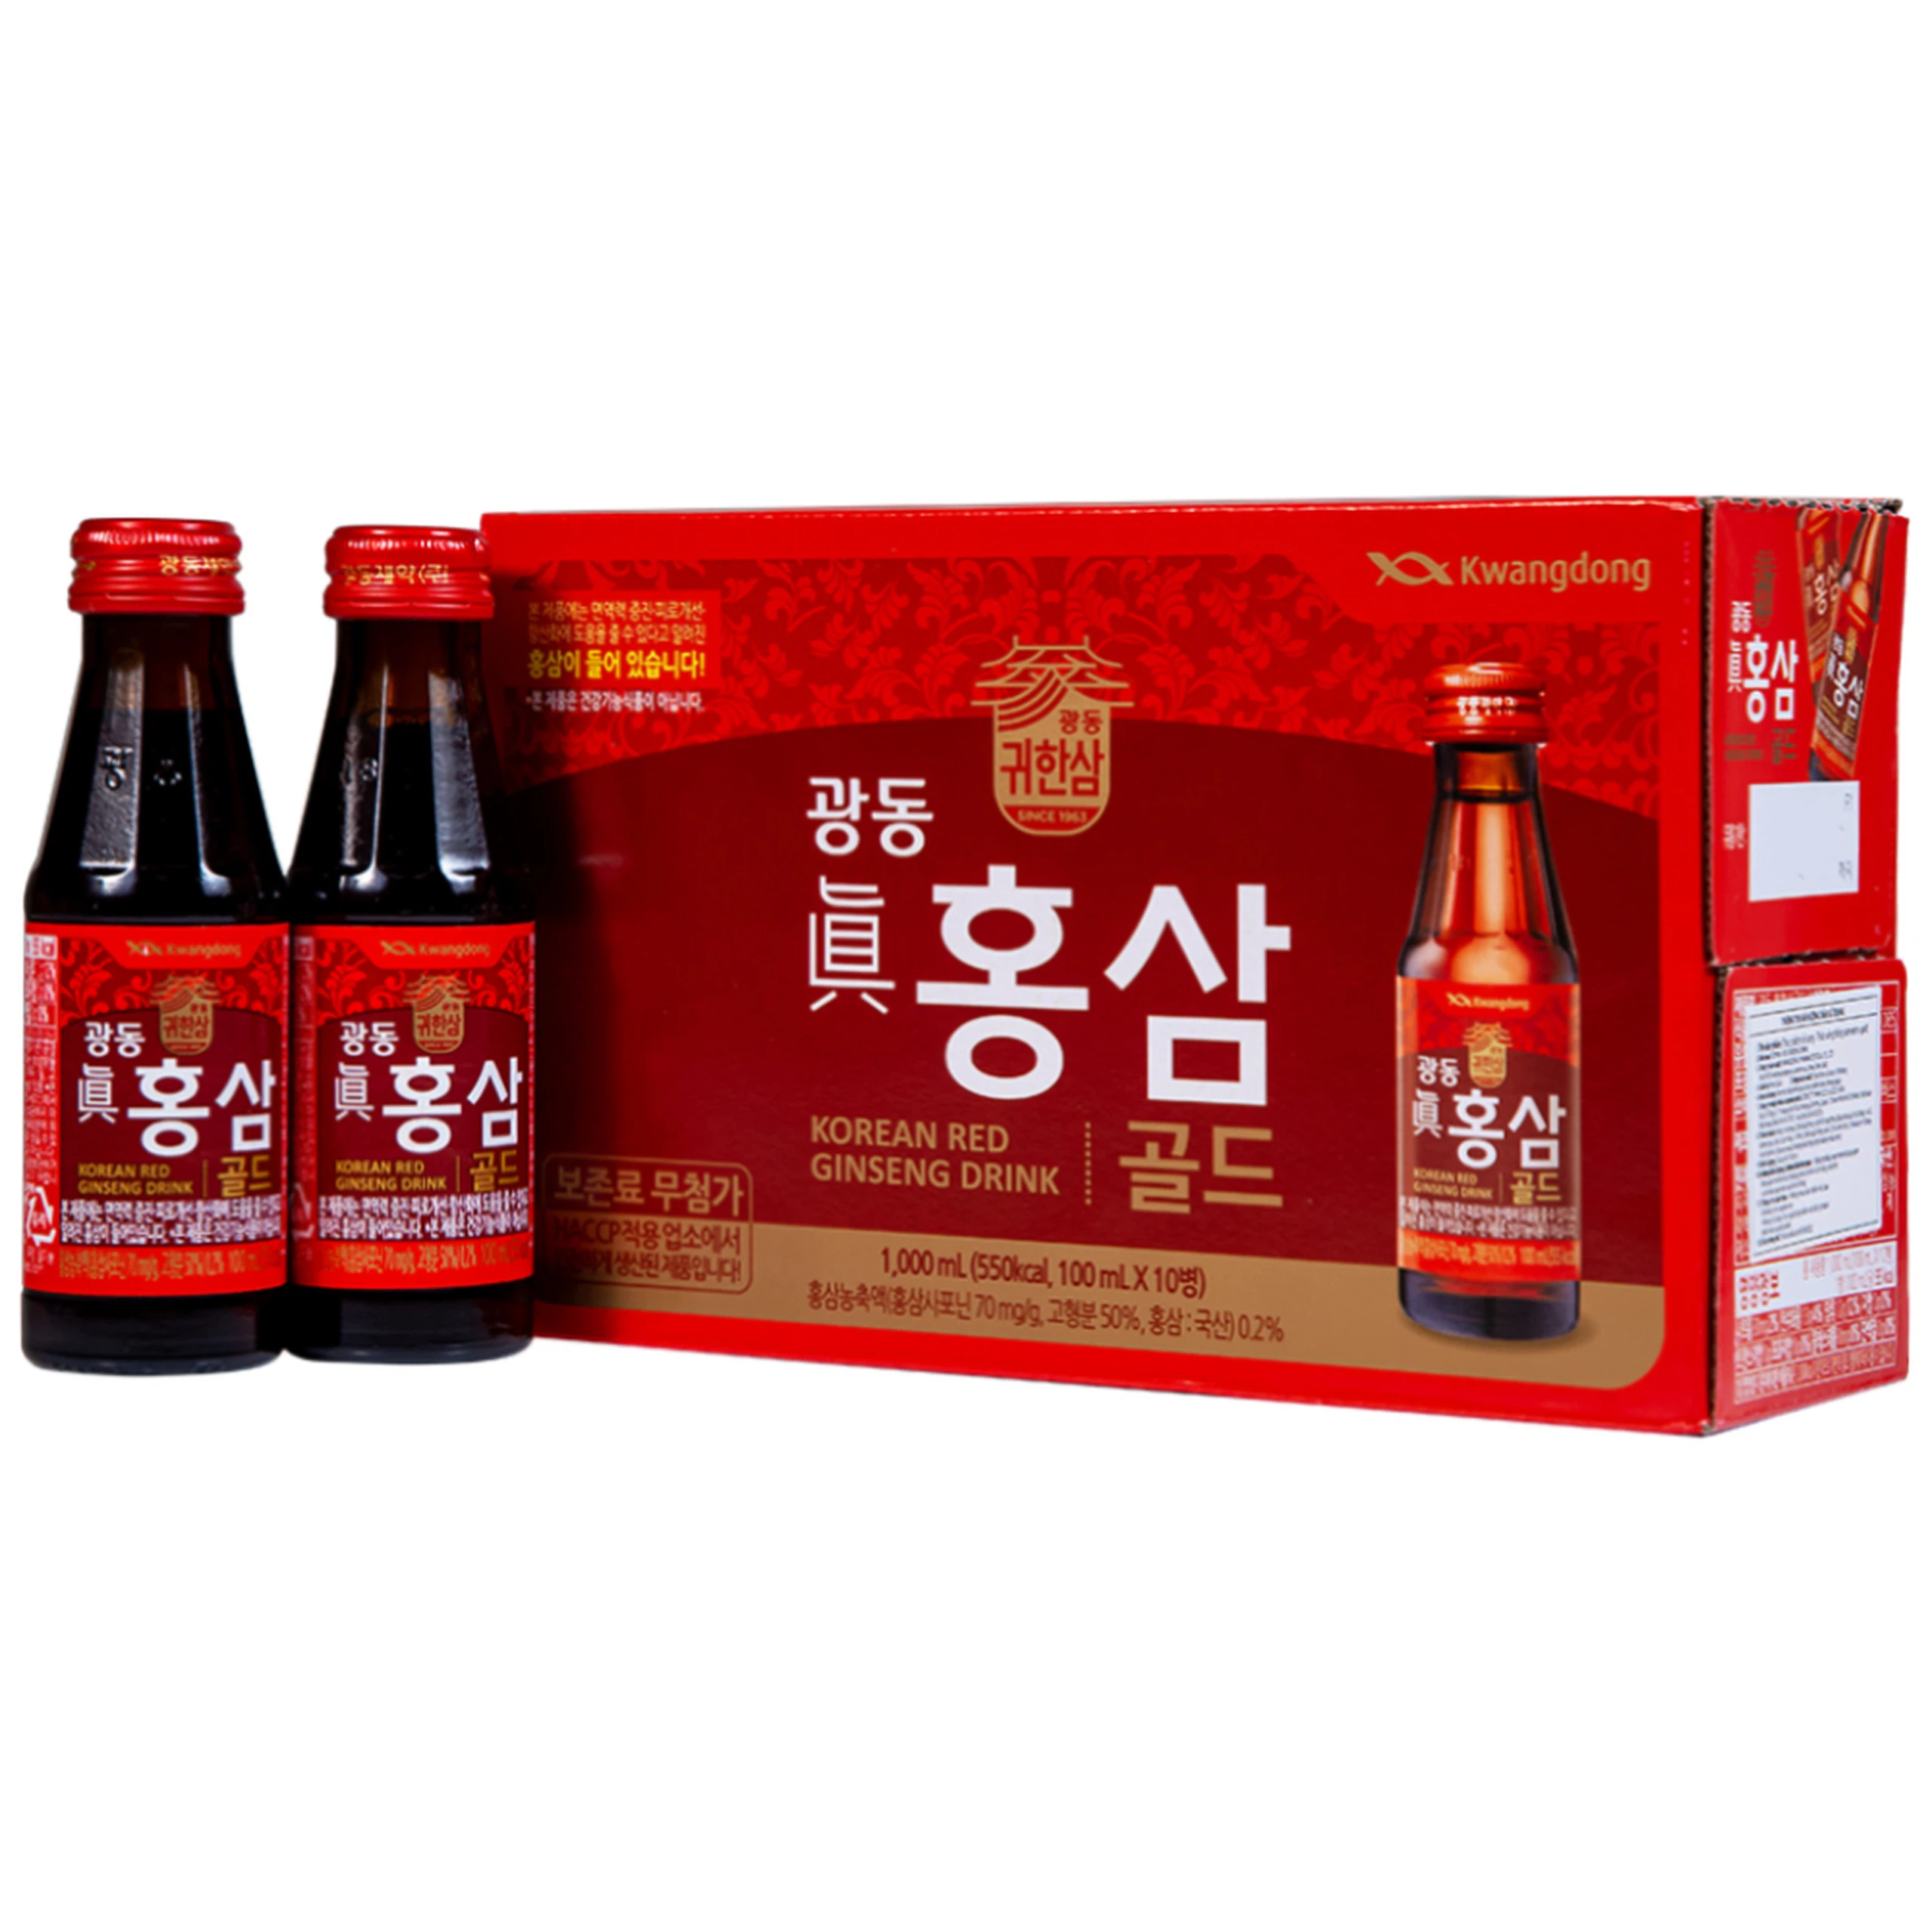 Nước Hồng Sâm Extra Gold Kwangdong bổ sung dinh dưỡng và năng lượng, tăng cường sức đề kháng (10 chai x 100ml)